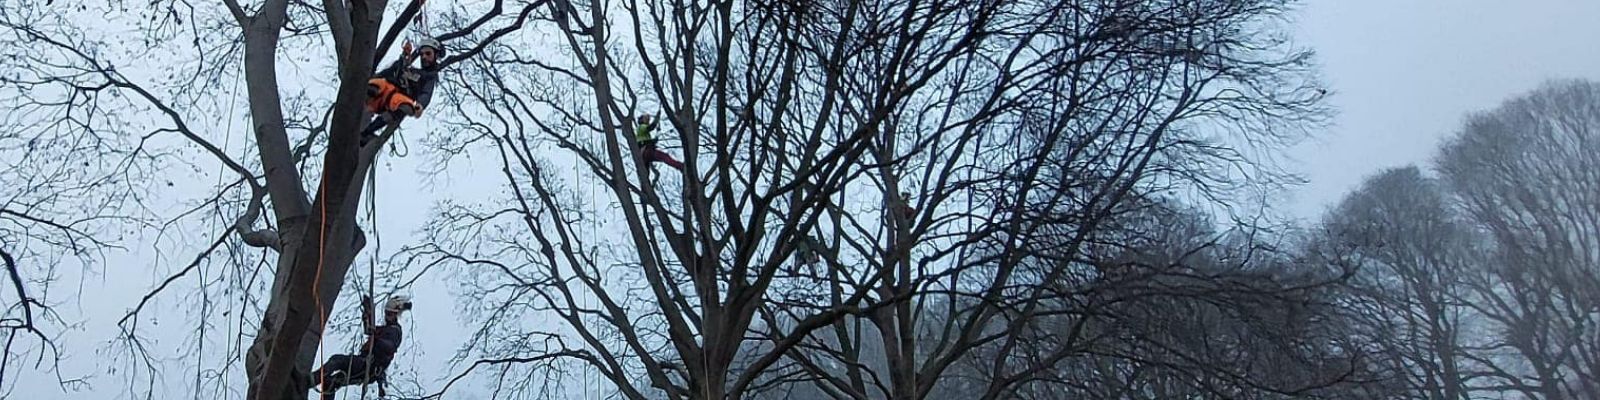 Tree climbing (base): lavoro in quota su fune, attività su albero ROMA